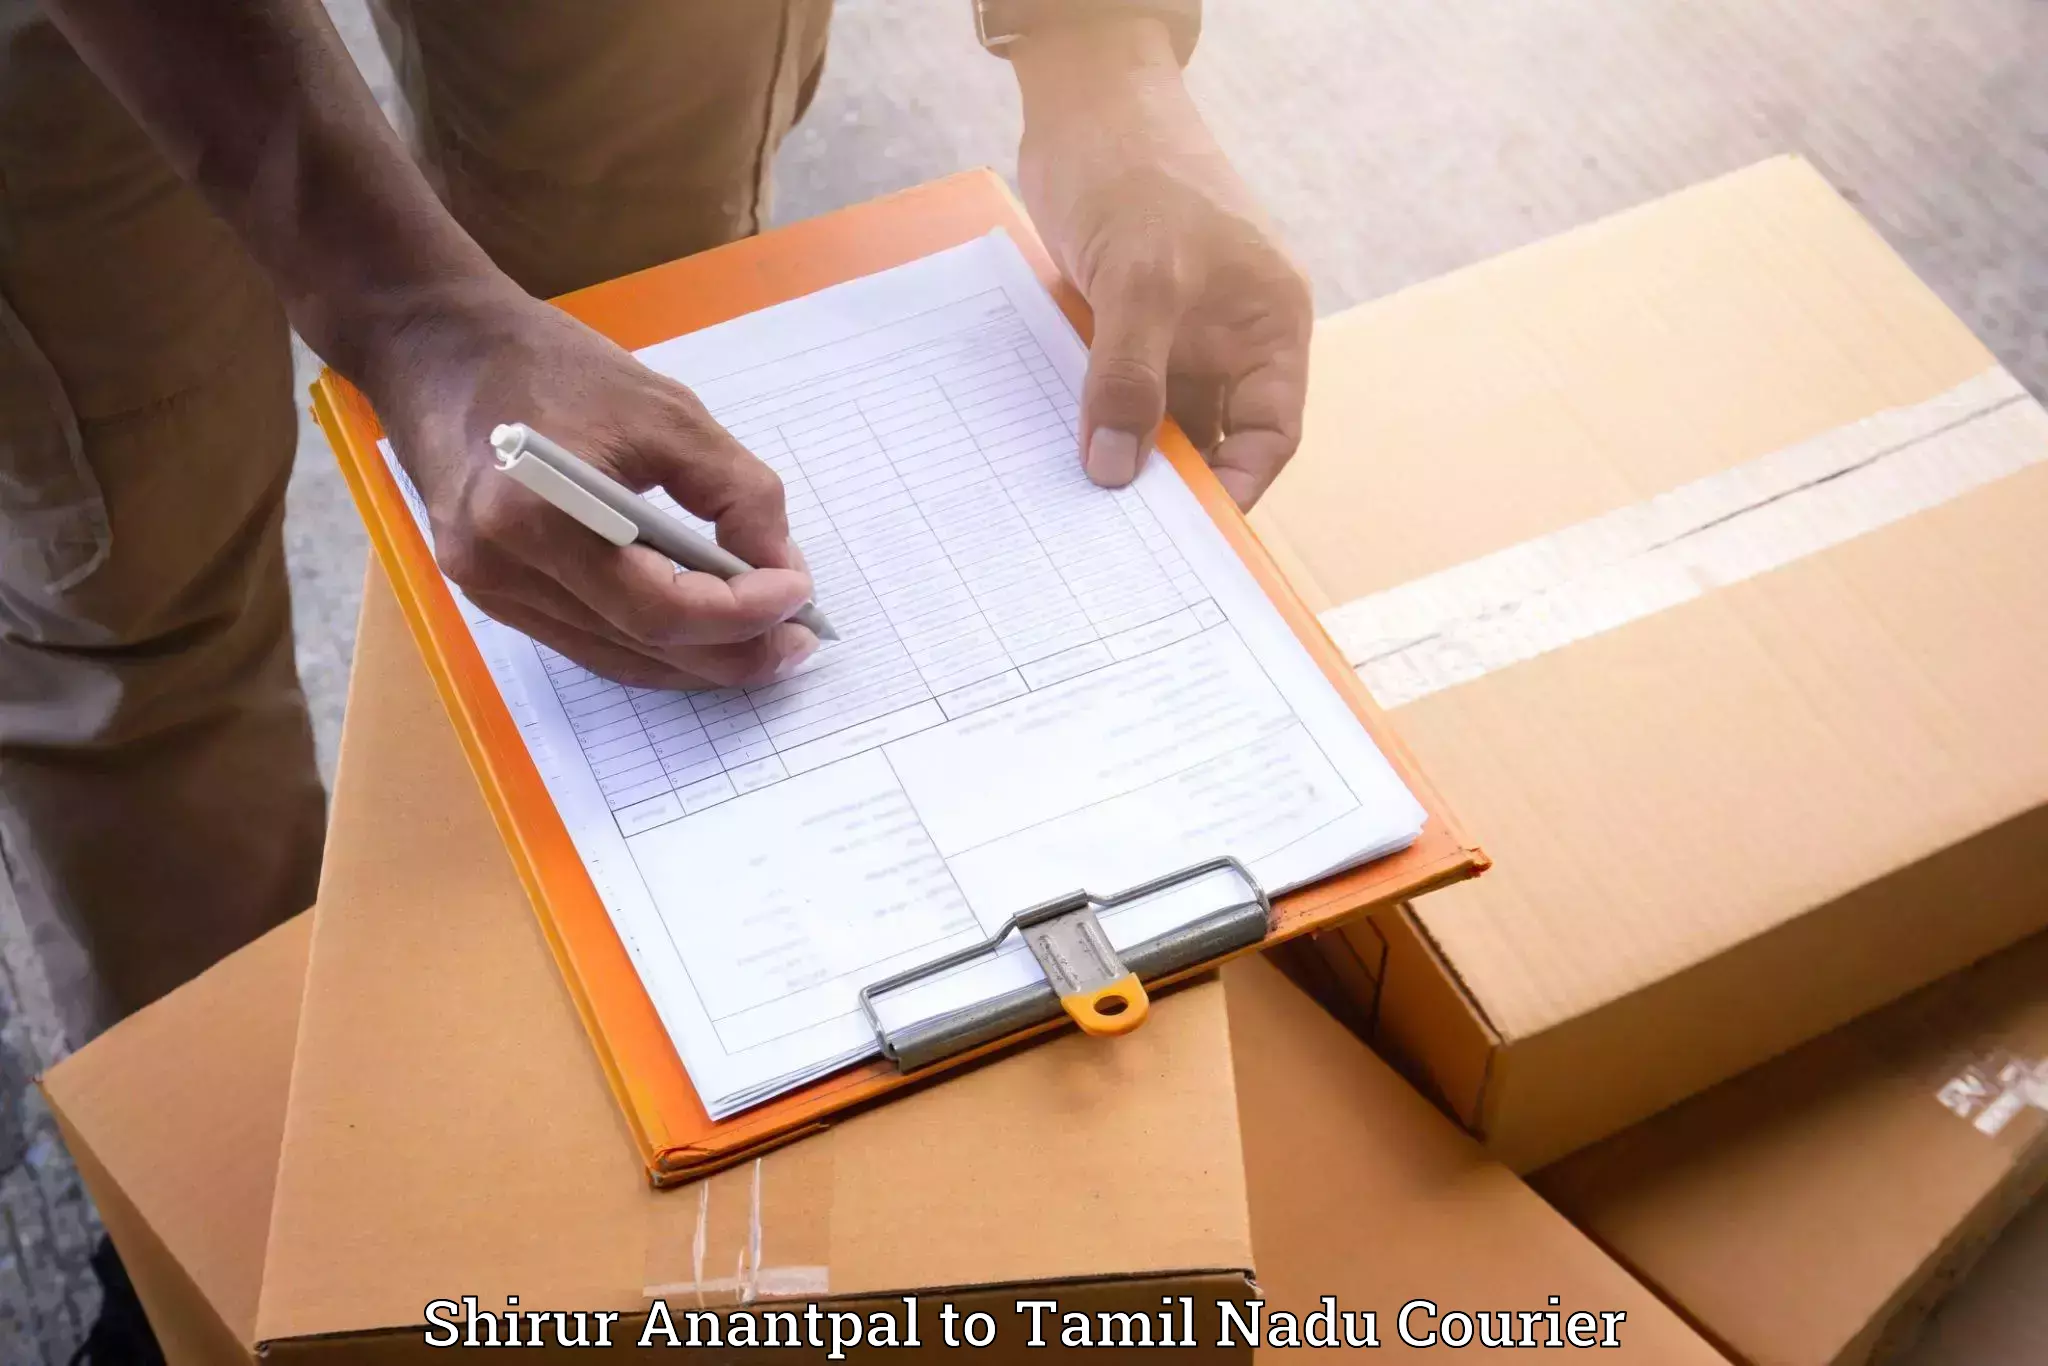 Professional moving company Shirur Anantpal to Gobichettipalayam